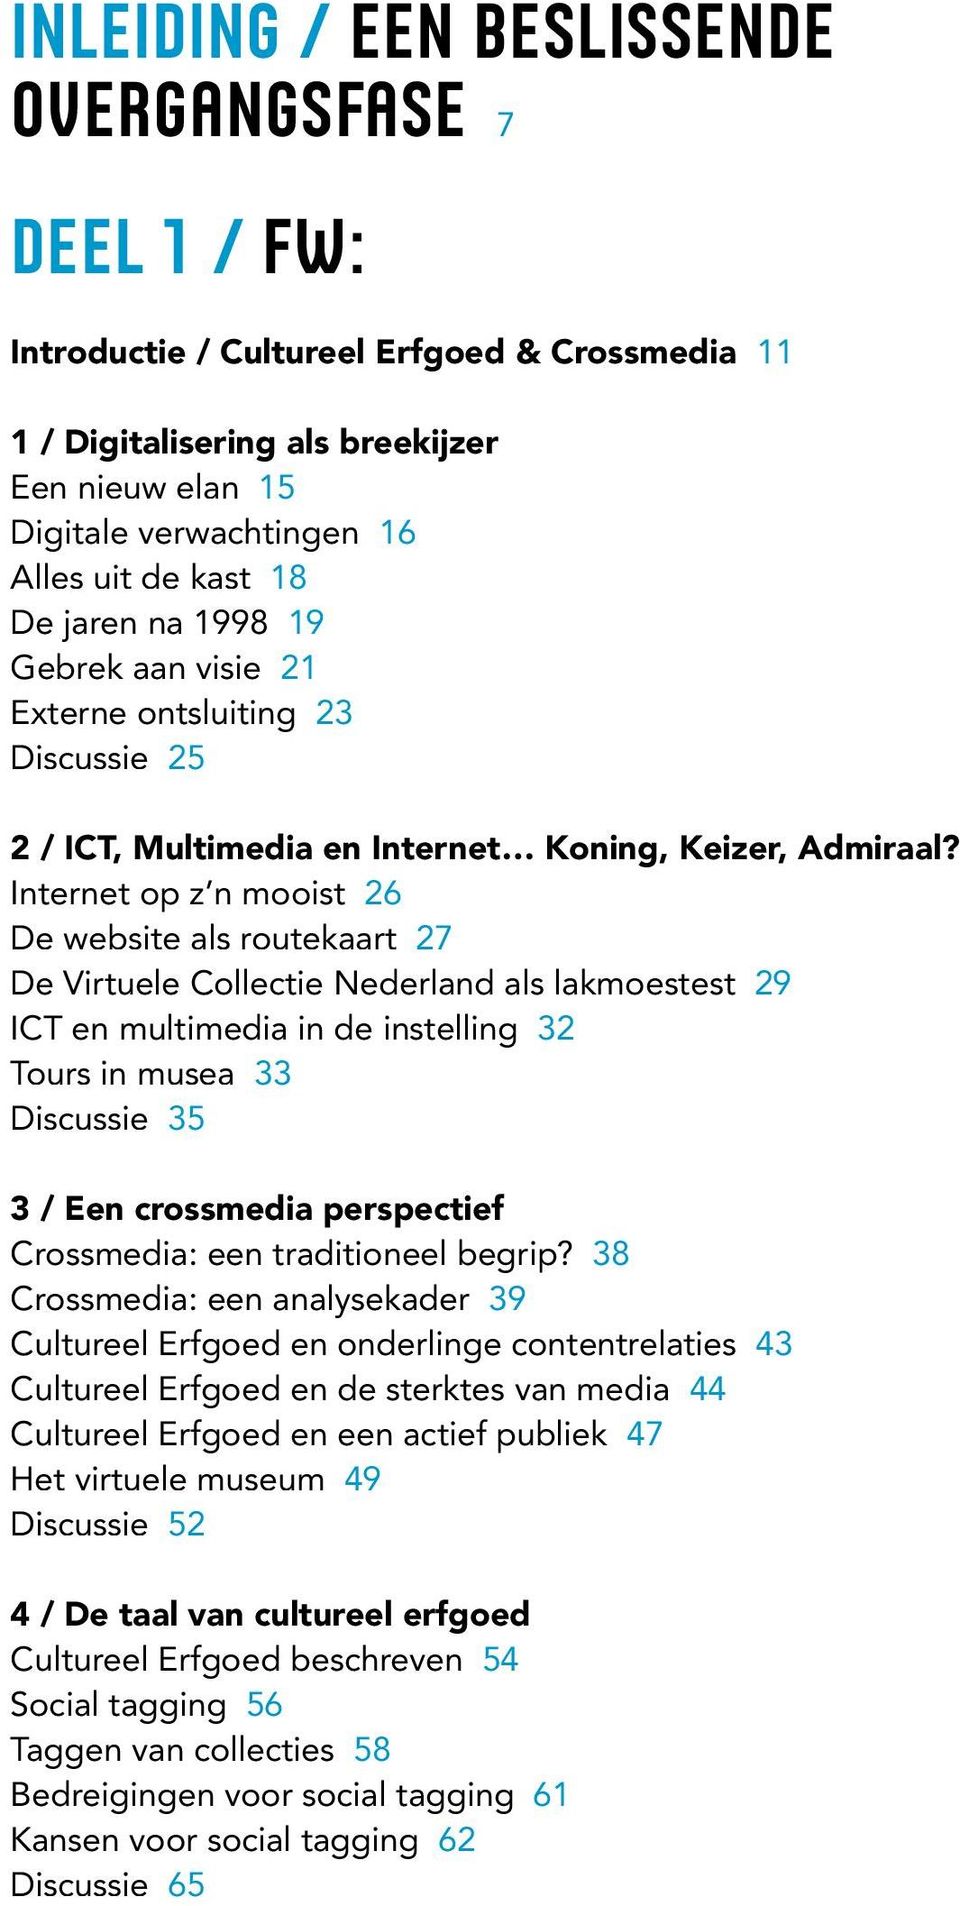 Internet op z n mooist 26 De website als routekaart 27 De Virtuele Collectie Nederland als lakmoestest 29 ICT en multimedia in de instelling 32 Tours in musea 33 Discussie 35 3 / Een crossmedia